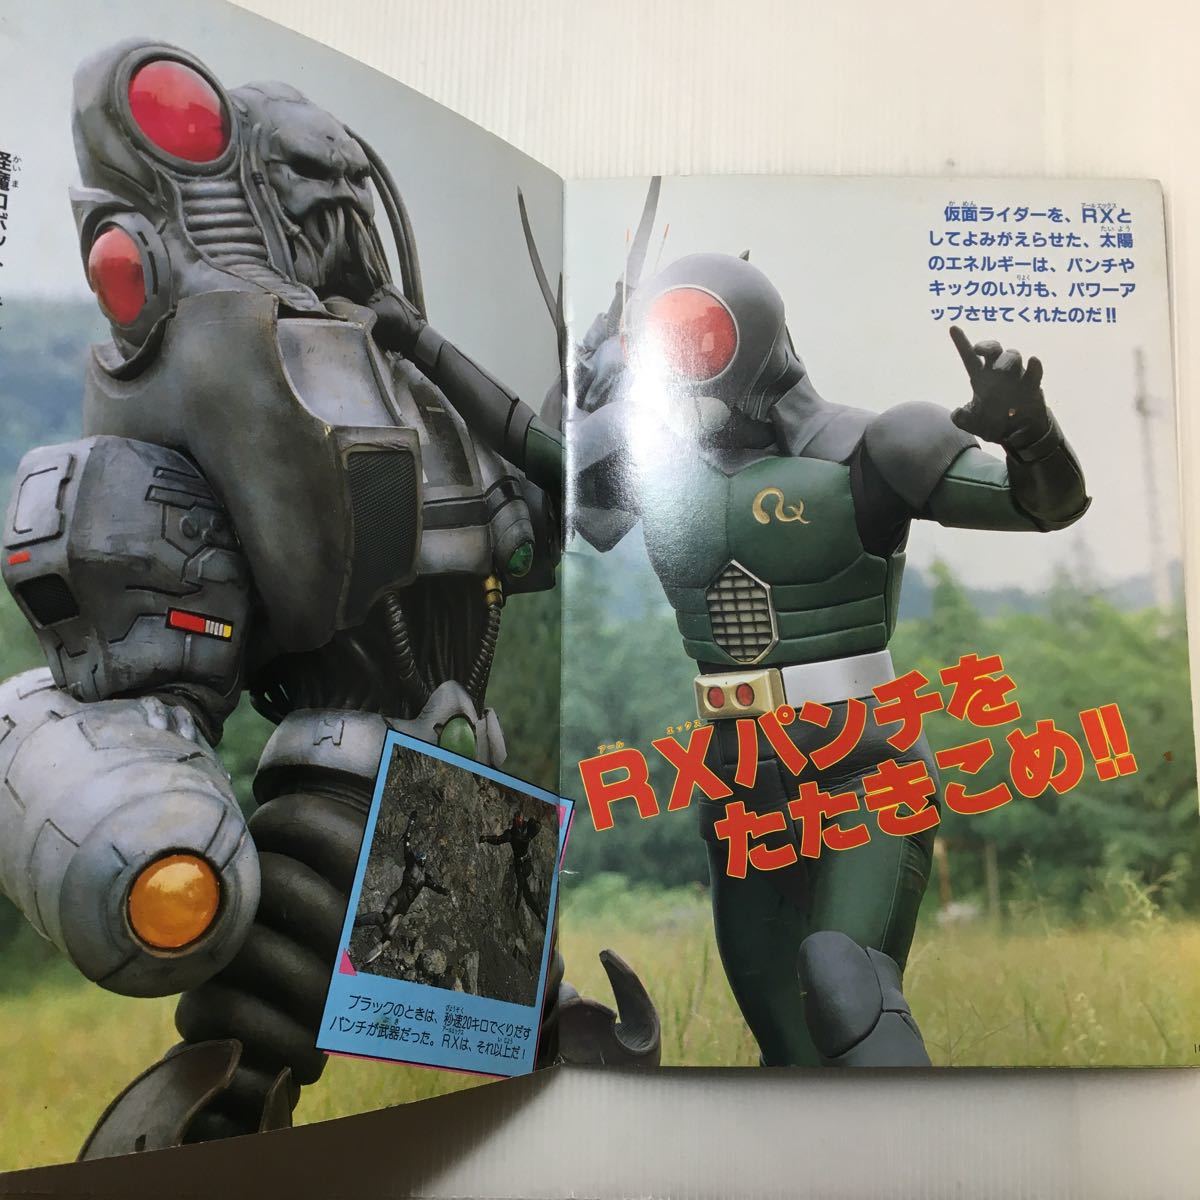 zaa-460♪アニメムック テレビランド カラーグラフ3 仮面ライダーブラックRX(2)1988/12/20 徳間書店